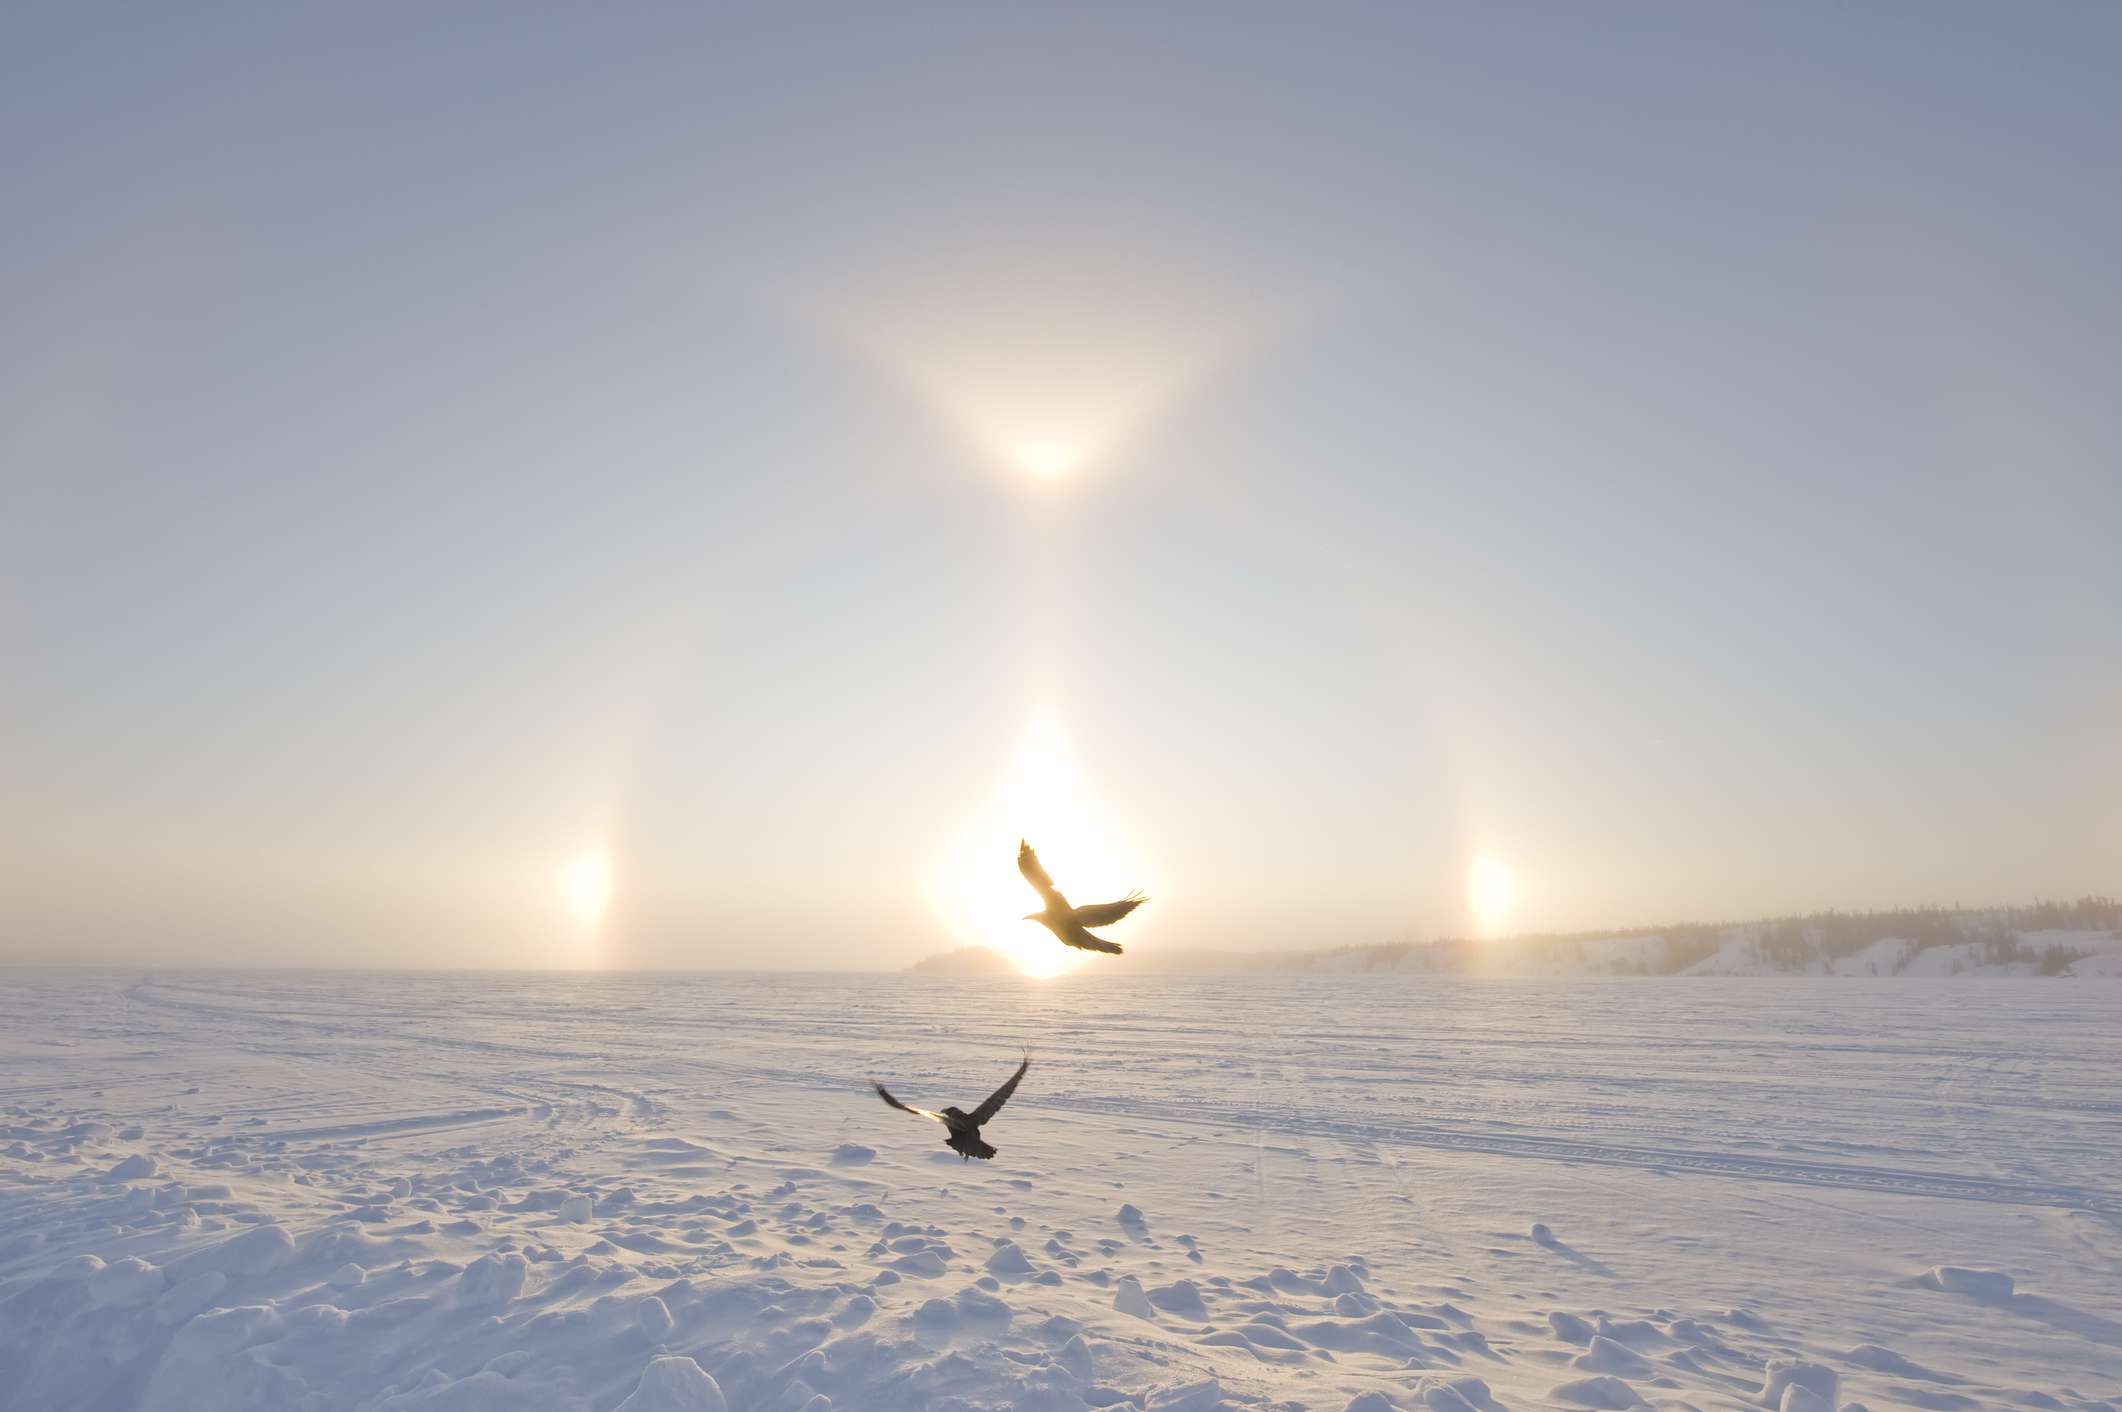 Dos cuervos volando a través de un Sundog -luces brillantes que aparecen a ambos lados de un amanecer- sobre la nieve del Gran Lago de los Esclavos en el Ártico canadiense.